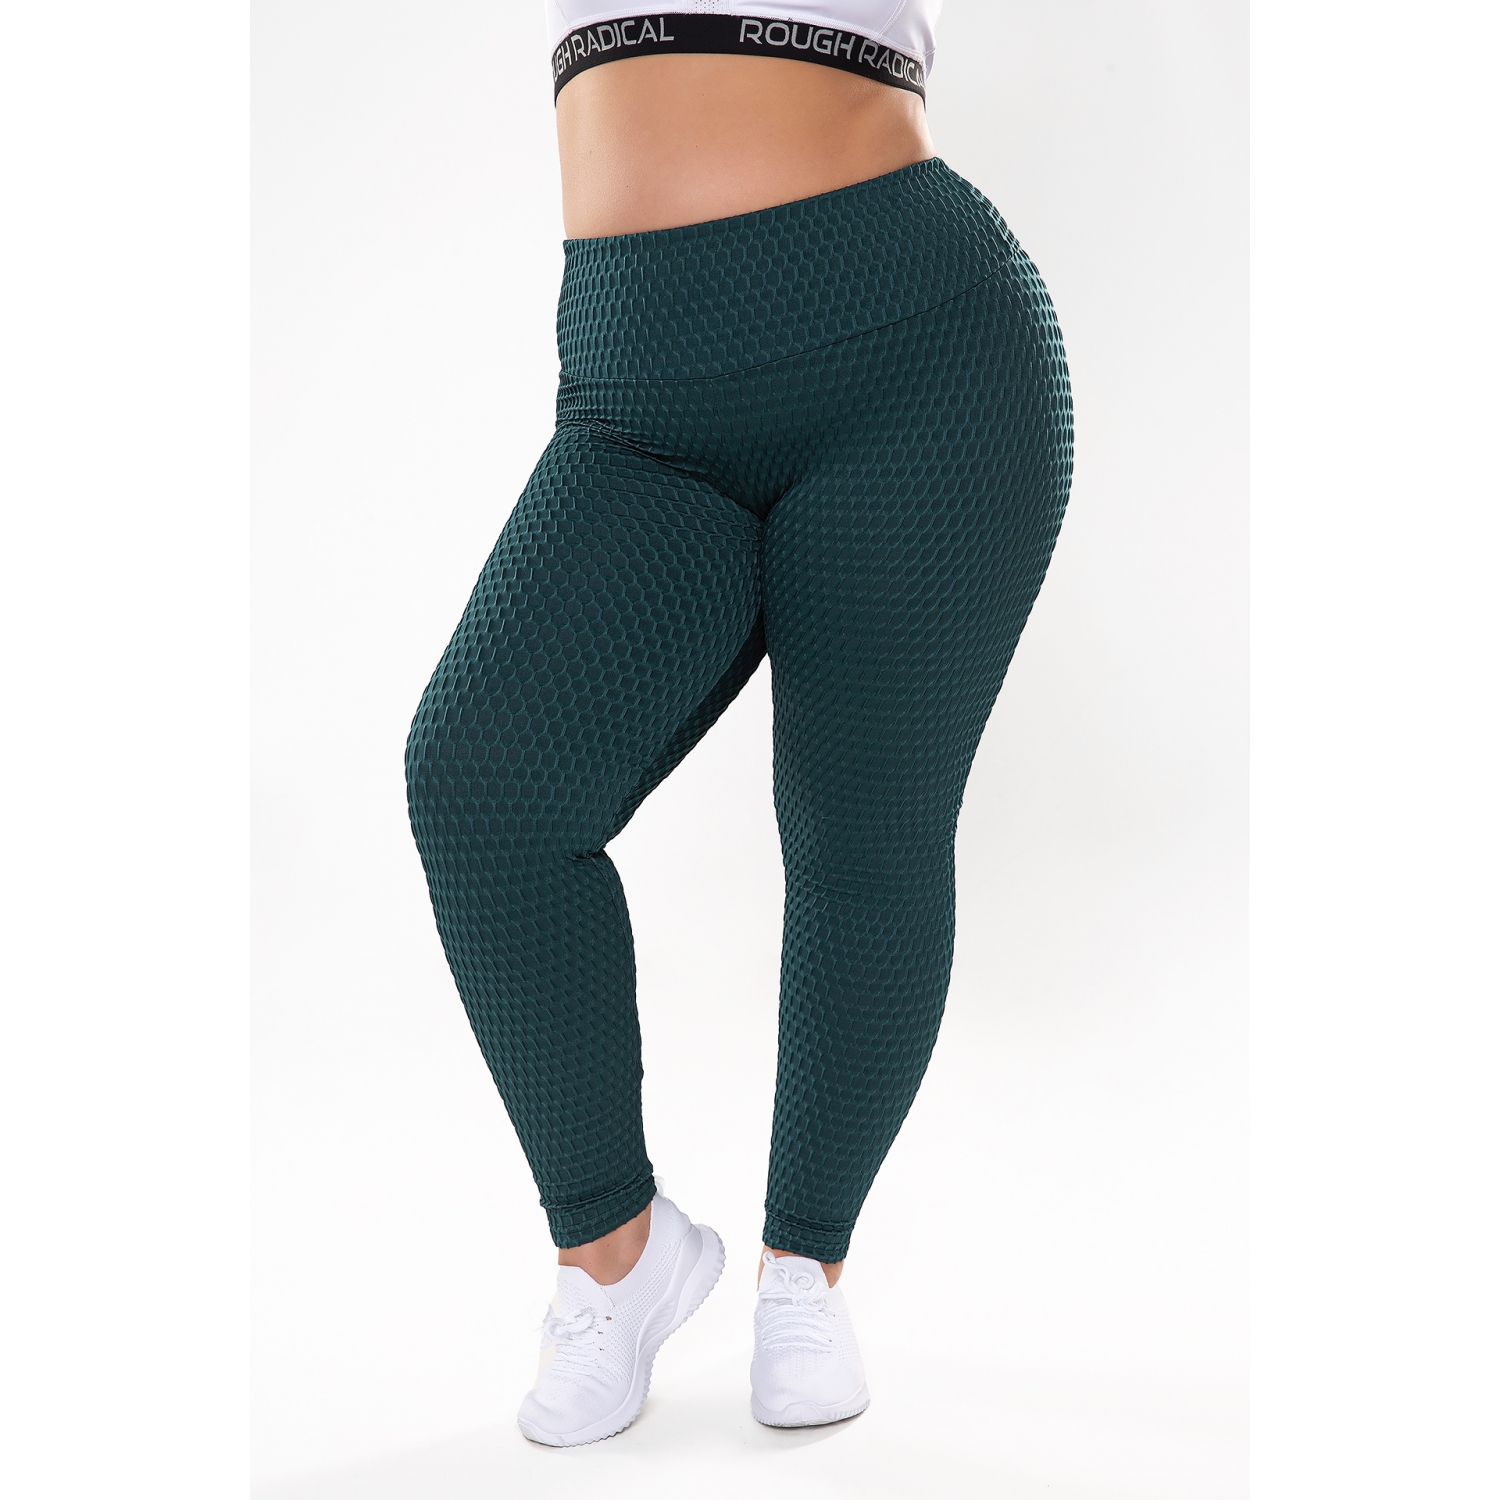 https://roughradical.com.pl/6237-full_product/women-s-anti-cellulite-leggings-impulse-plus-size.jpg